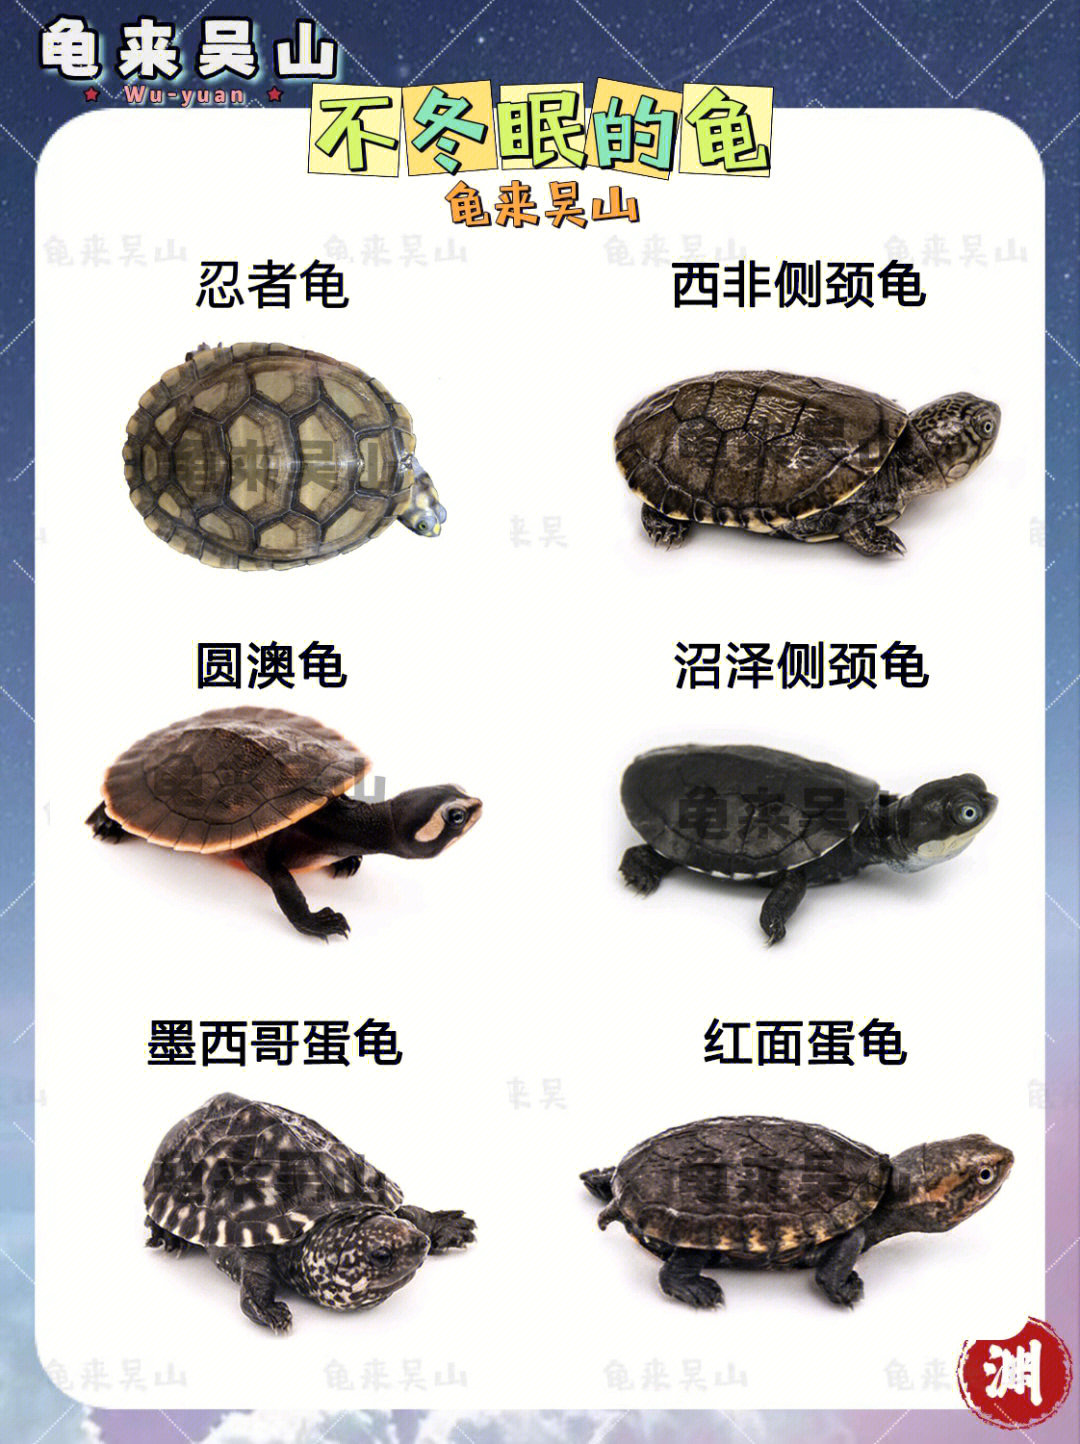 冷水龟品种大全图片